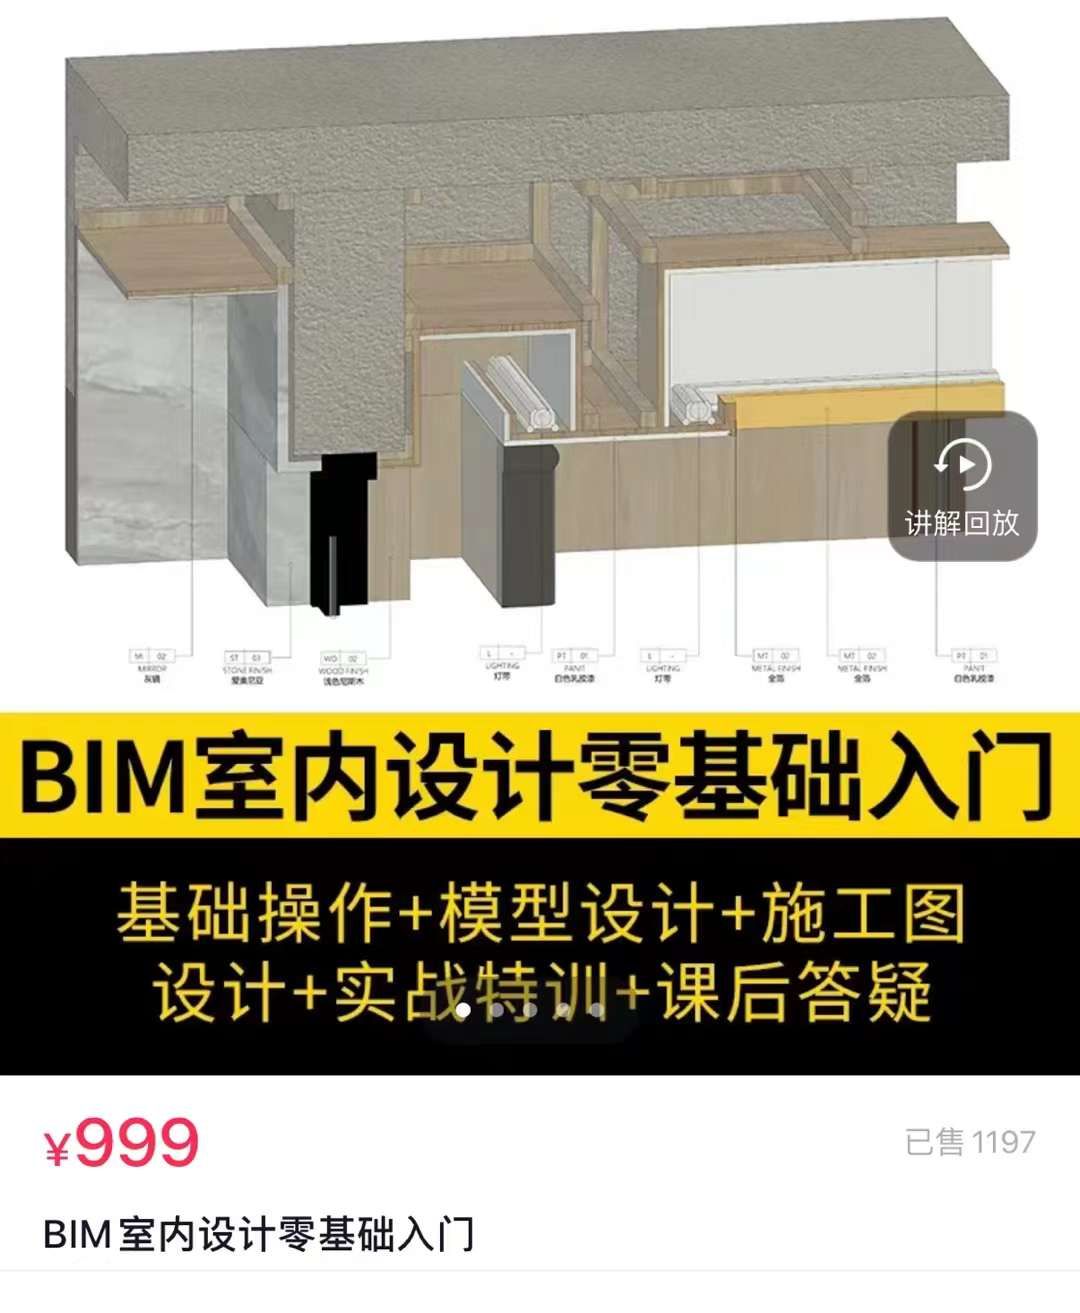 北京市北京市 王鹏鑫的BIM三维策划作品 - 第二届最美工地评选大赛